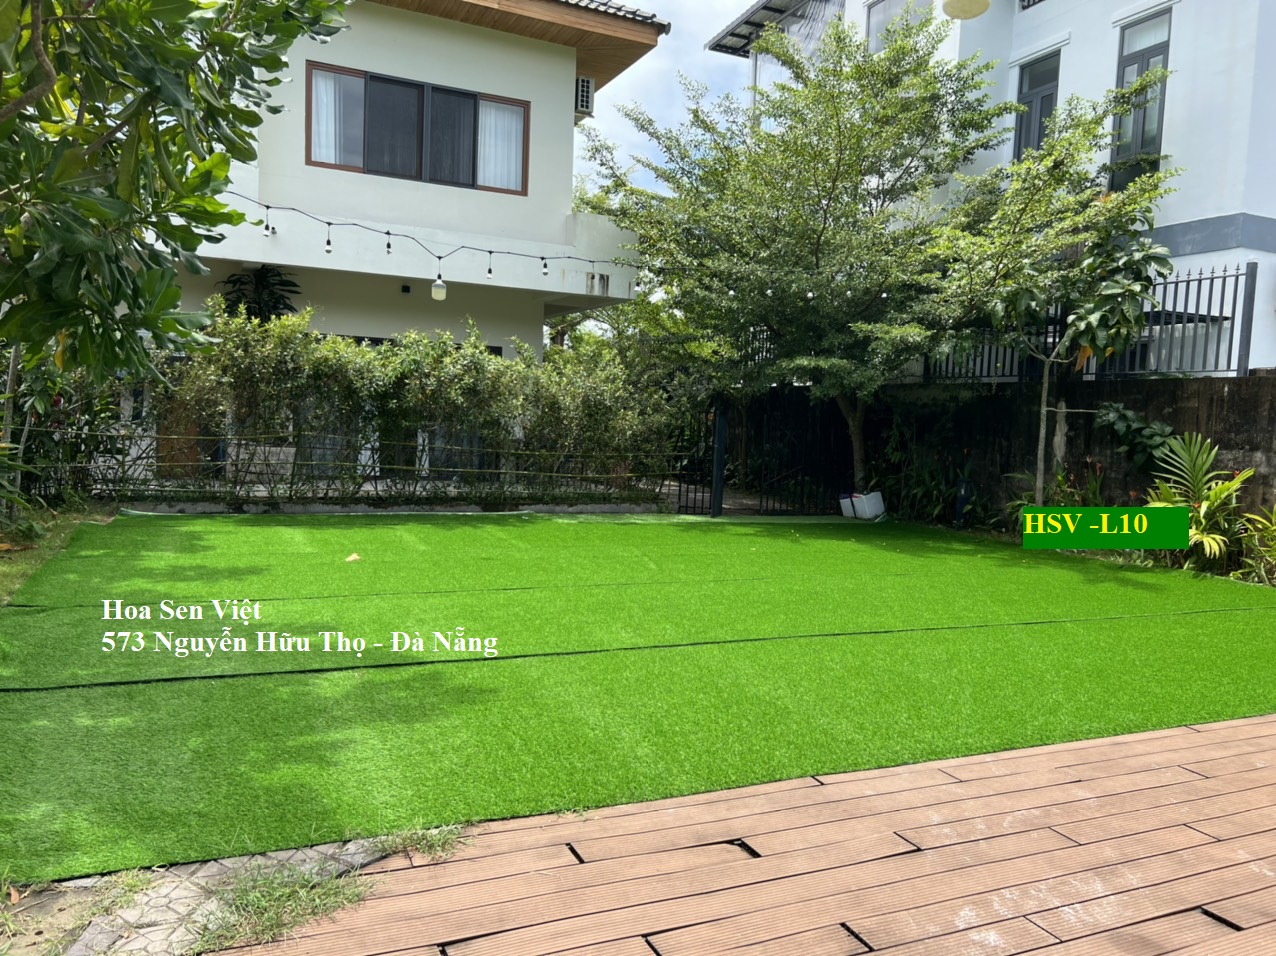 Thảm cỏ nhân tạo loại tốt - Cửa hàng thảm cỏ nhân tạo giá rẻ Đà Nẵng